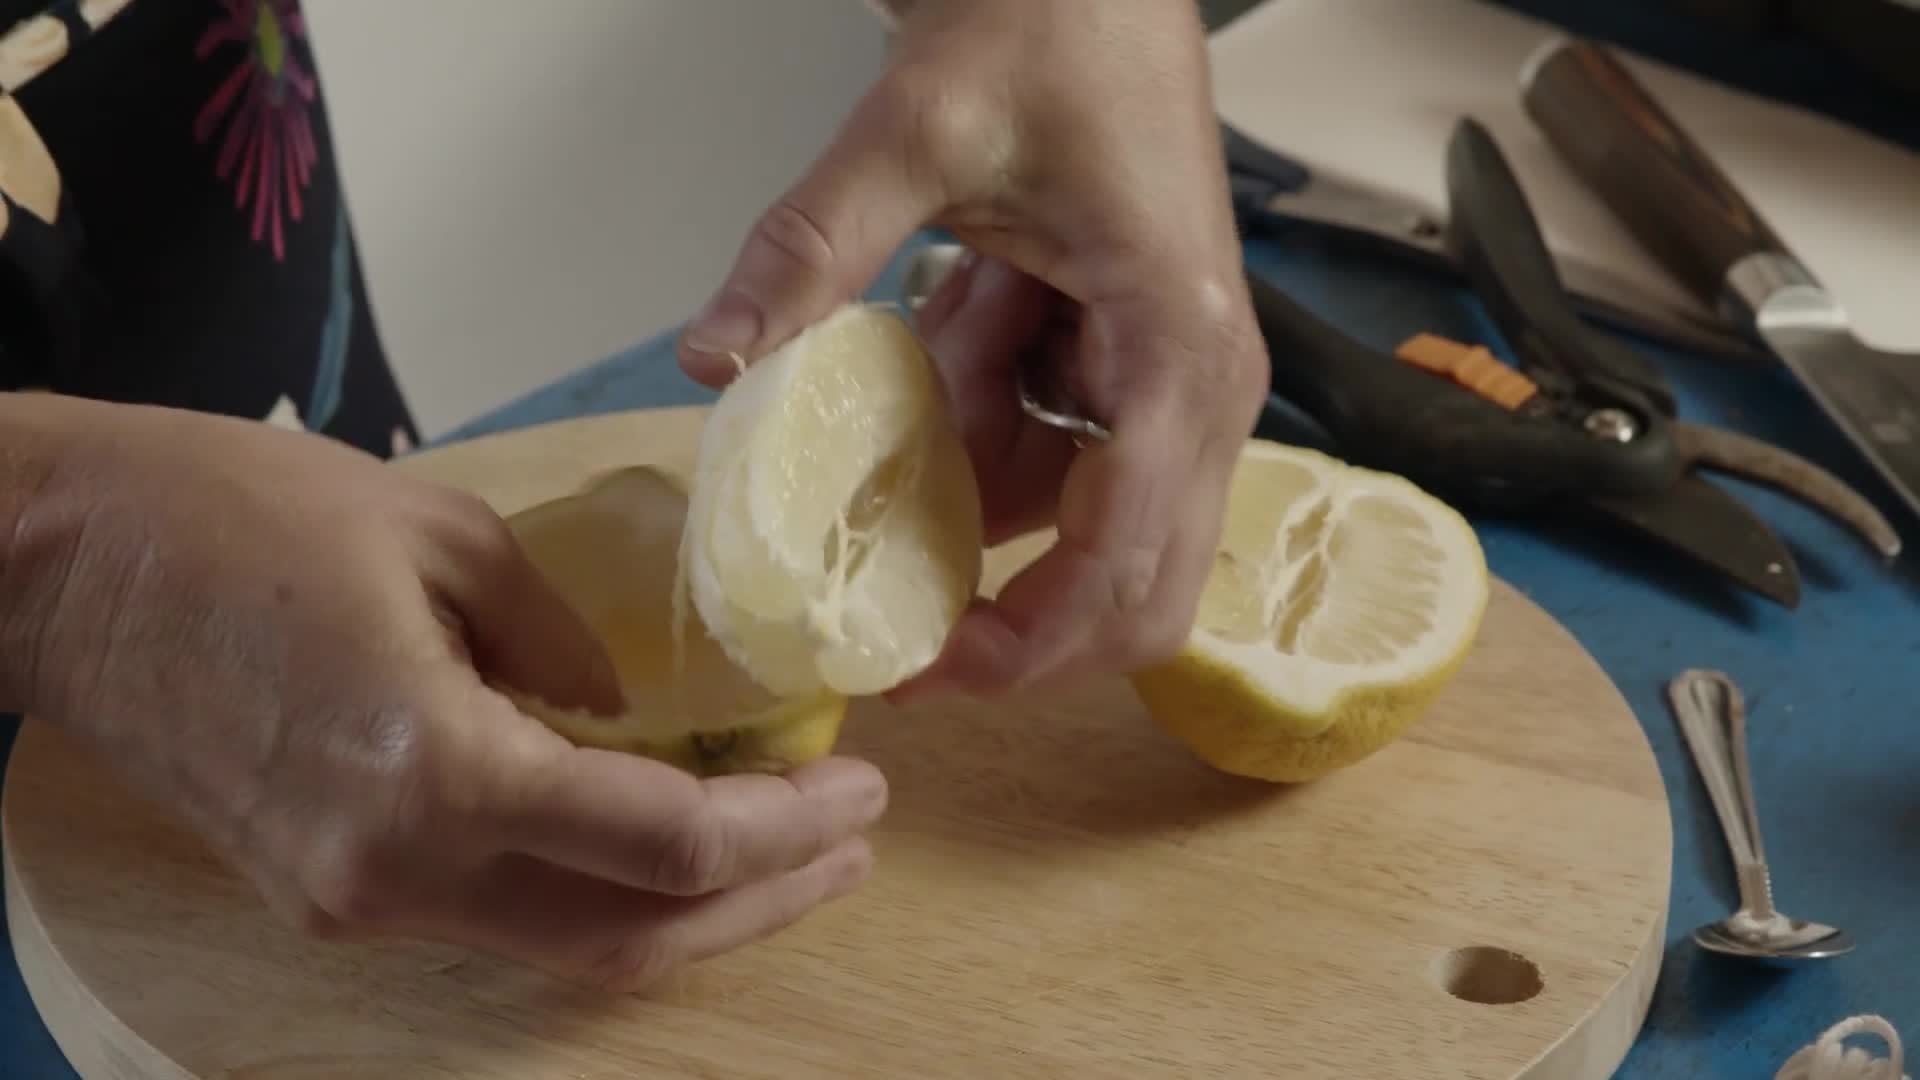 Vyndejte dužinu z půlky citronu